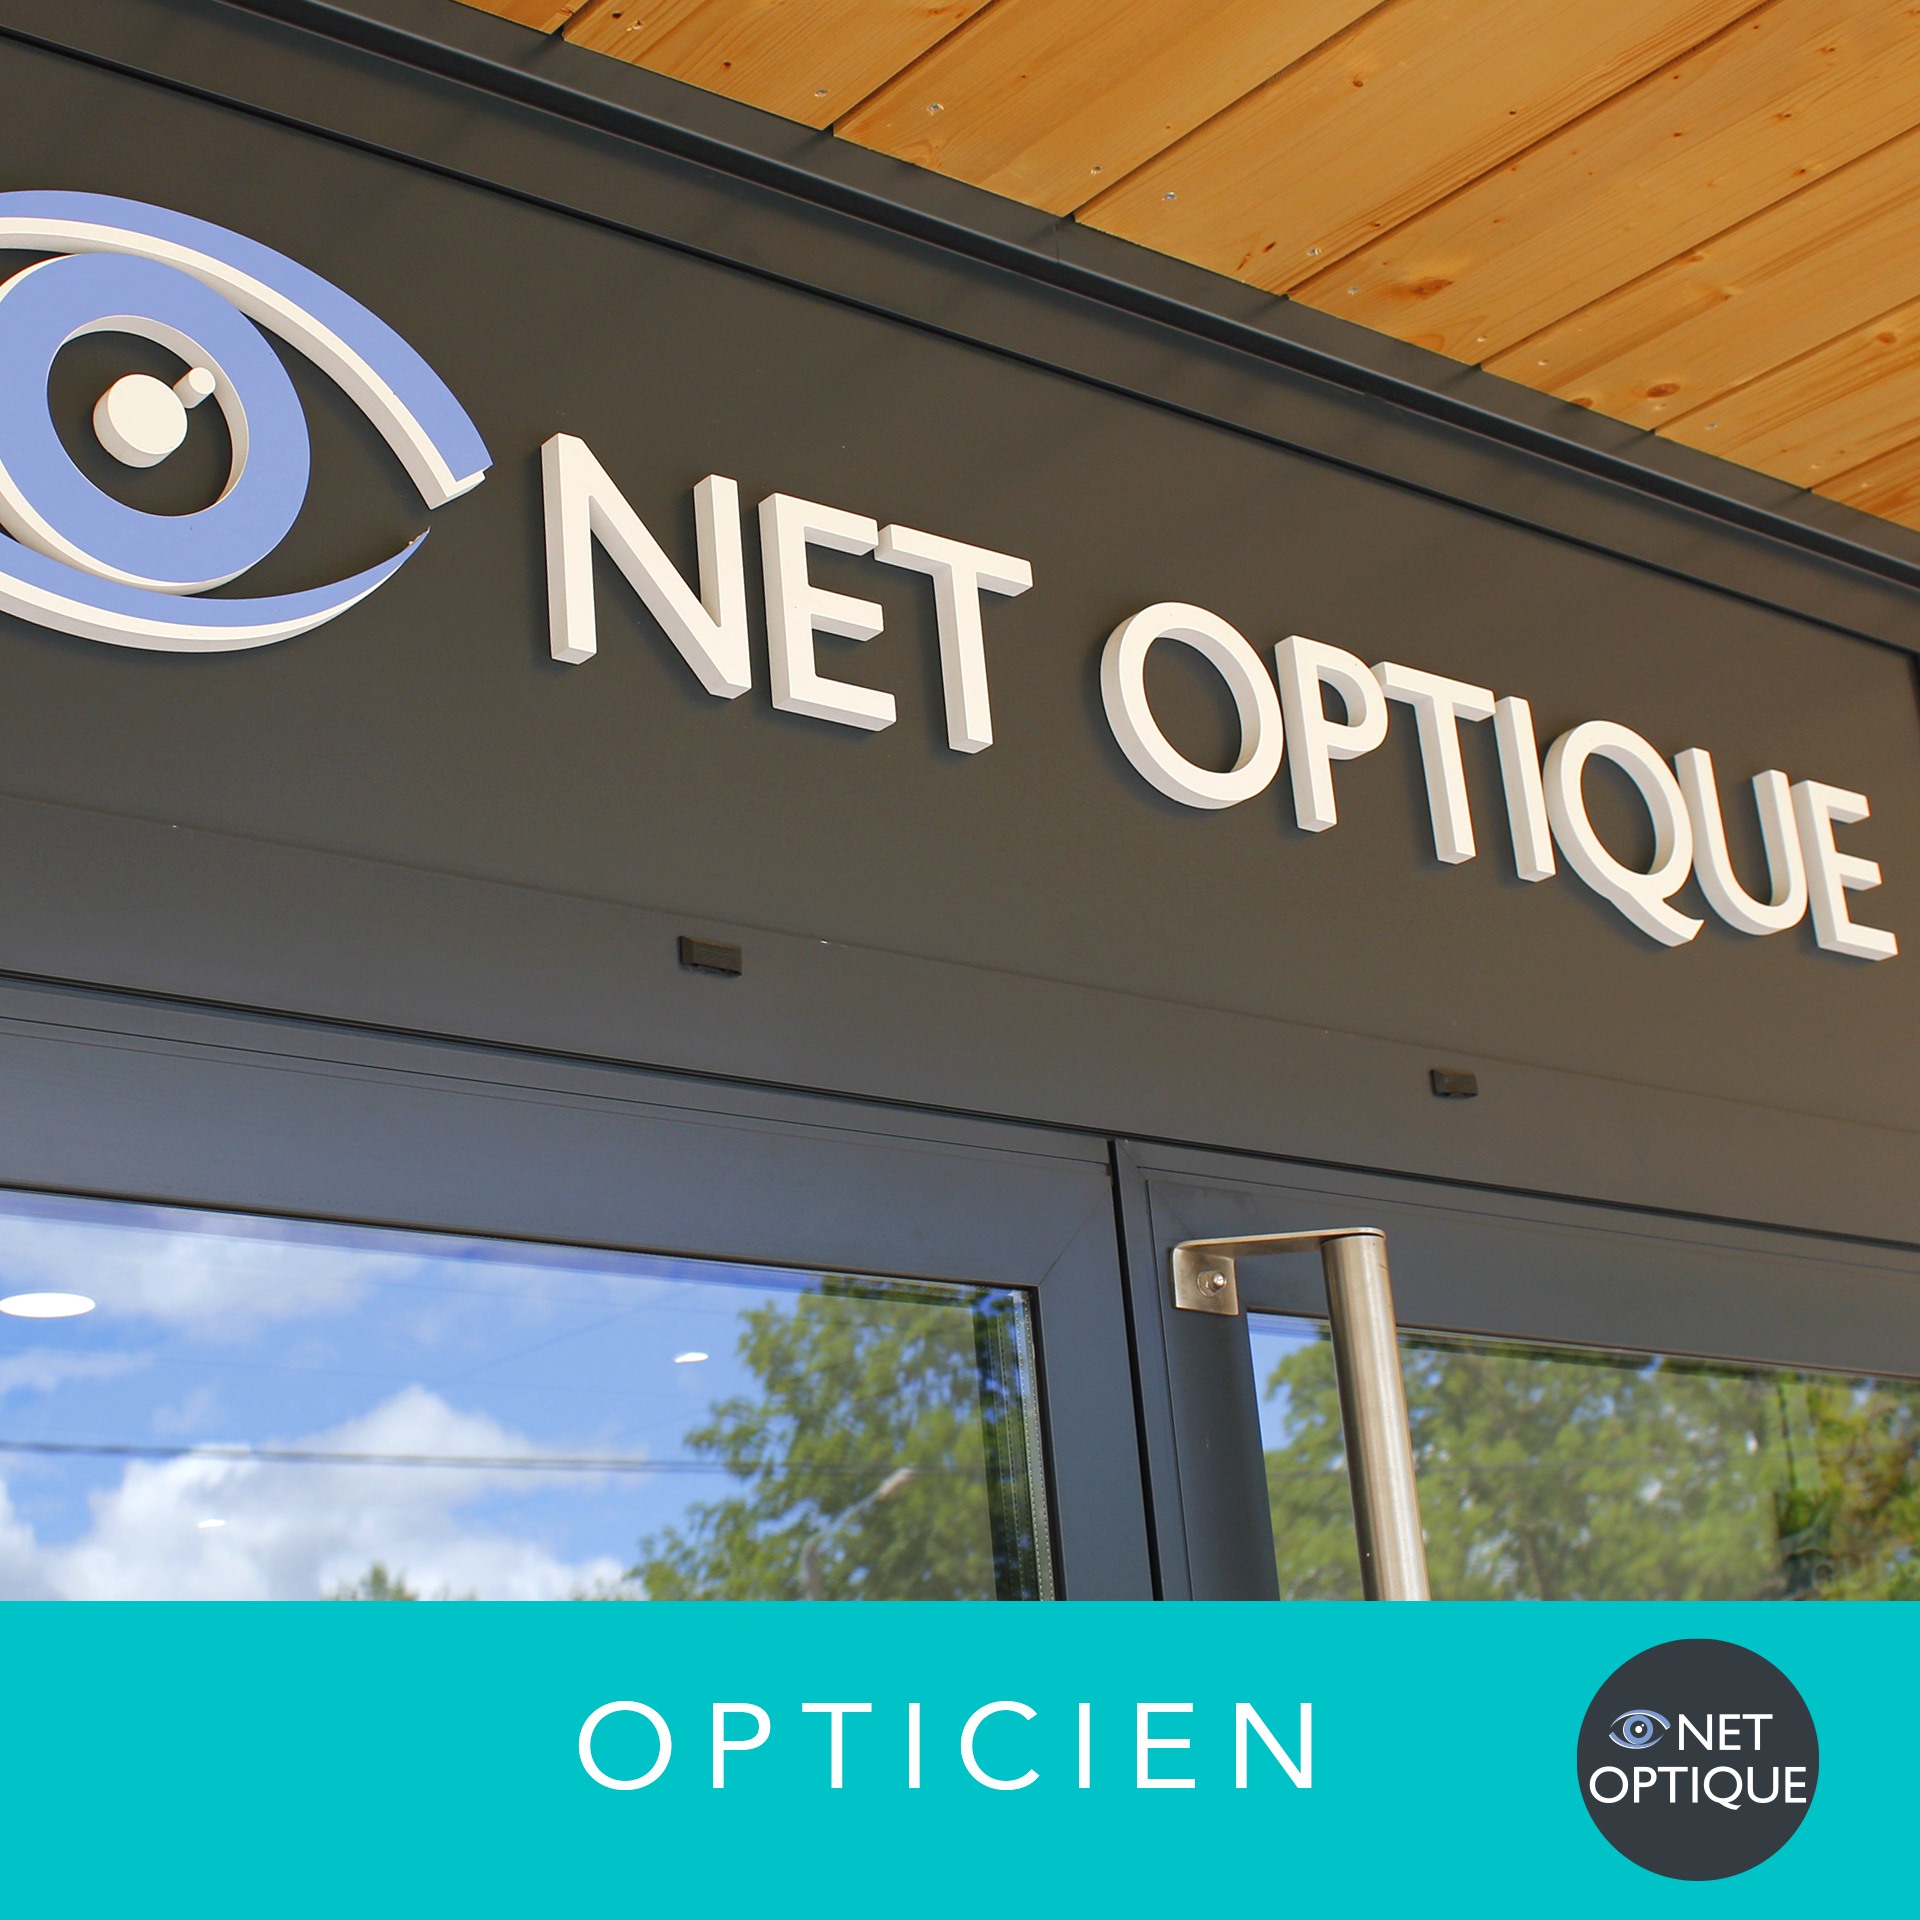 Net Optique – Lunettes, solaires, lentilles